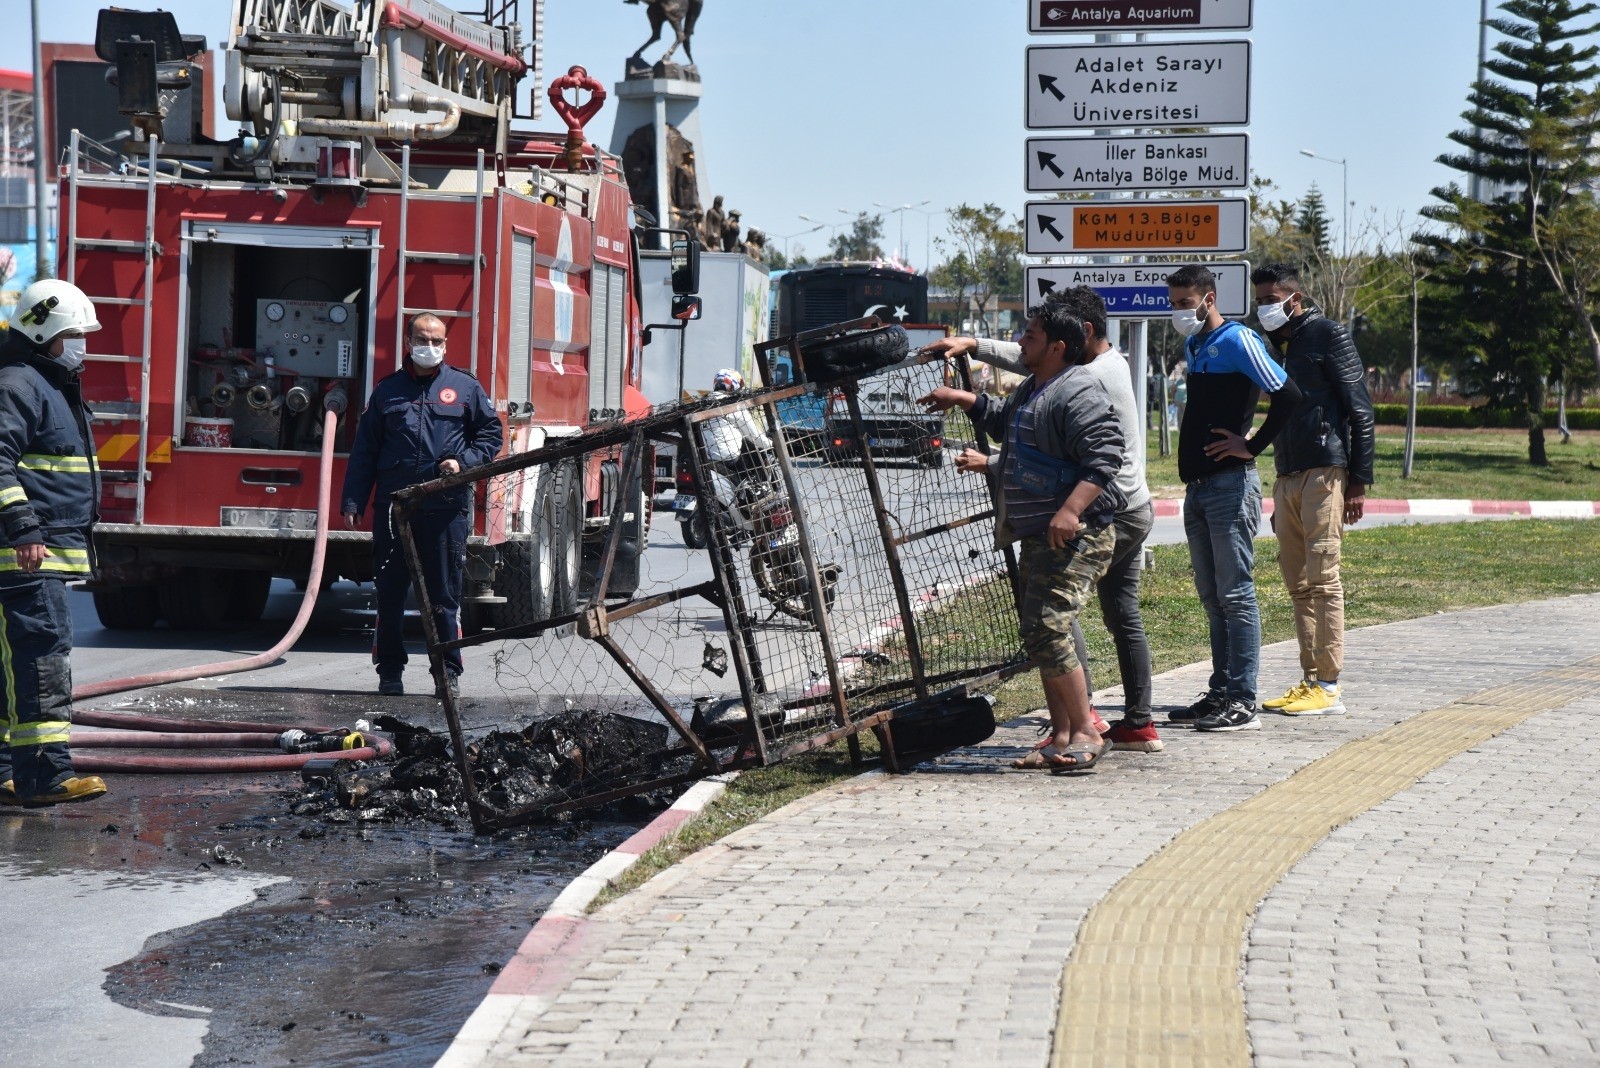 Suriye uyruklu bir kişinin motosikletinin arkasına bağlı ve içinde geri dönüşüm maddeleri olan römorku yandı